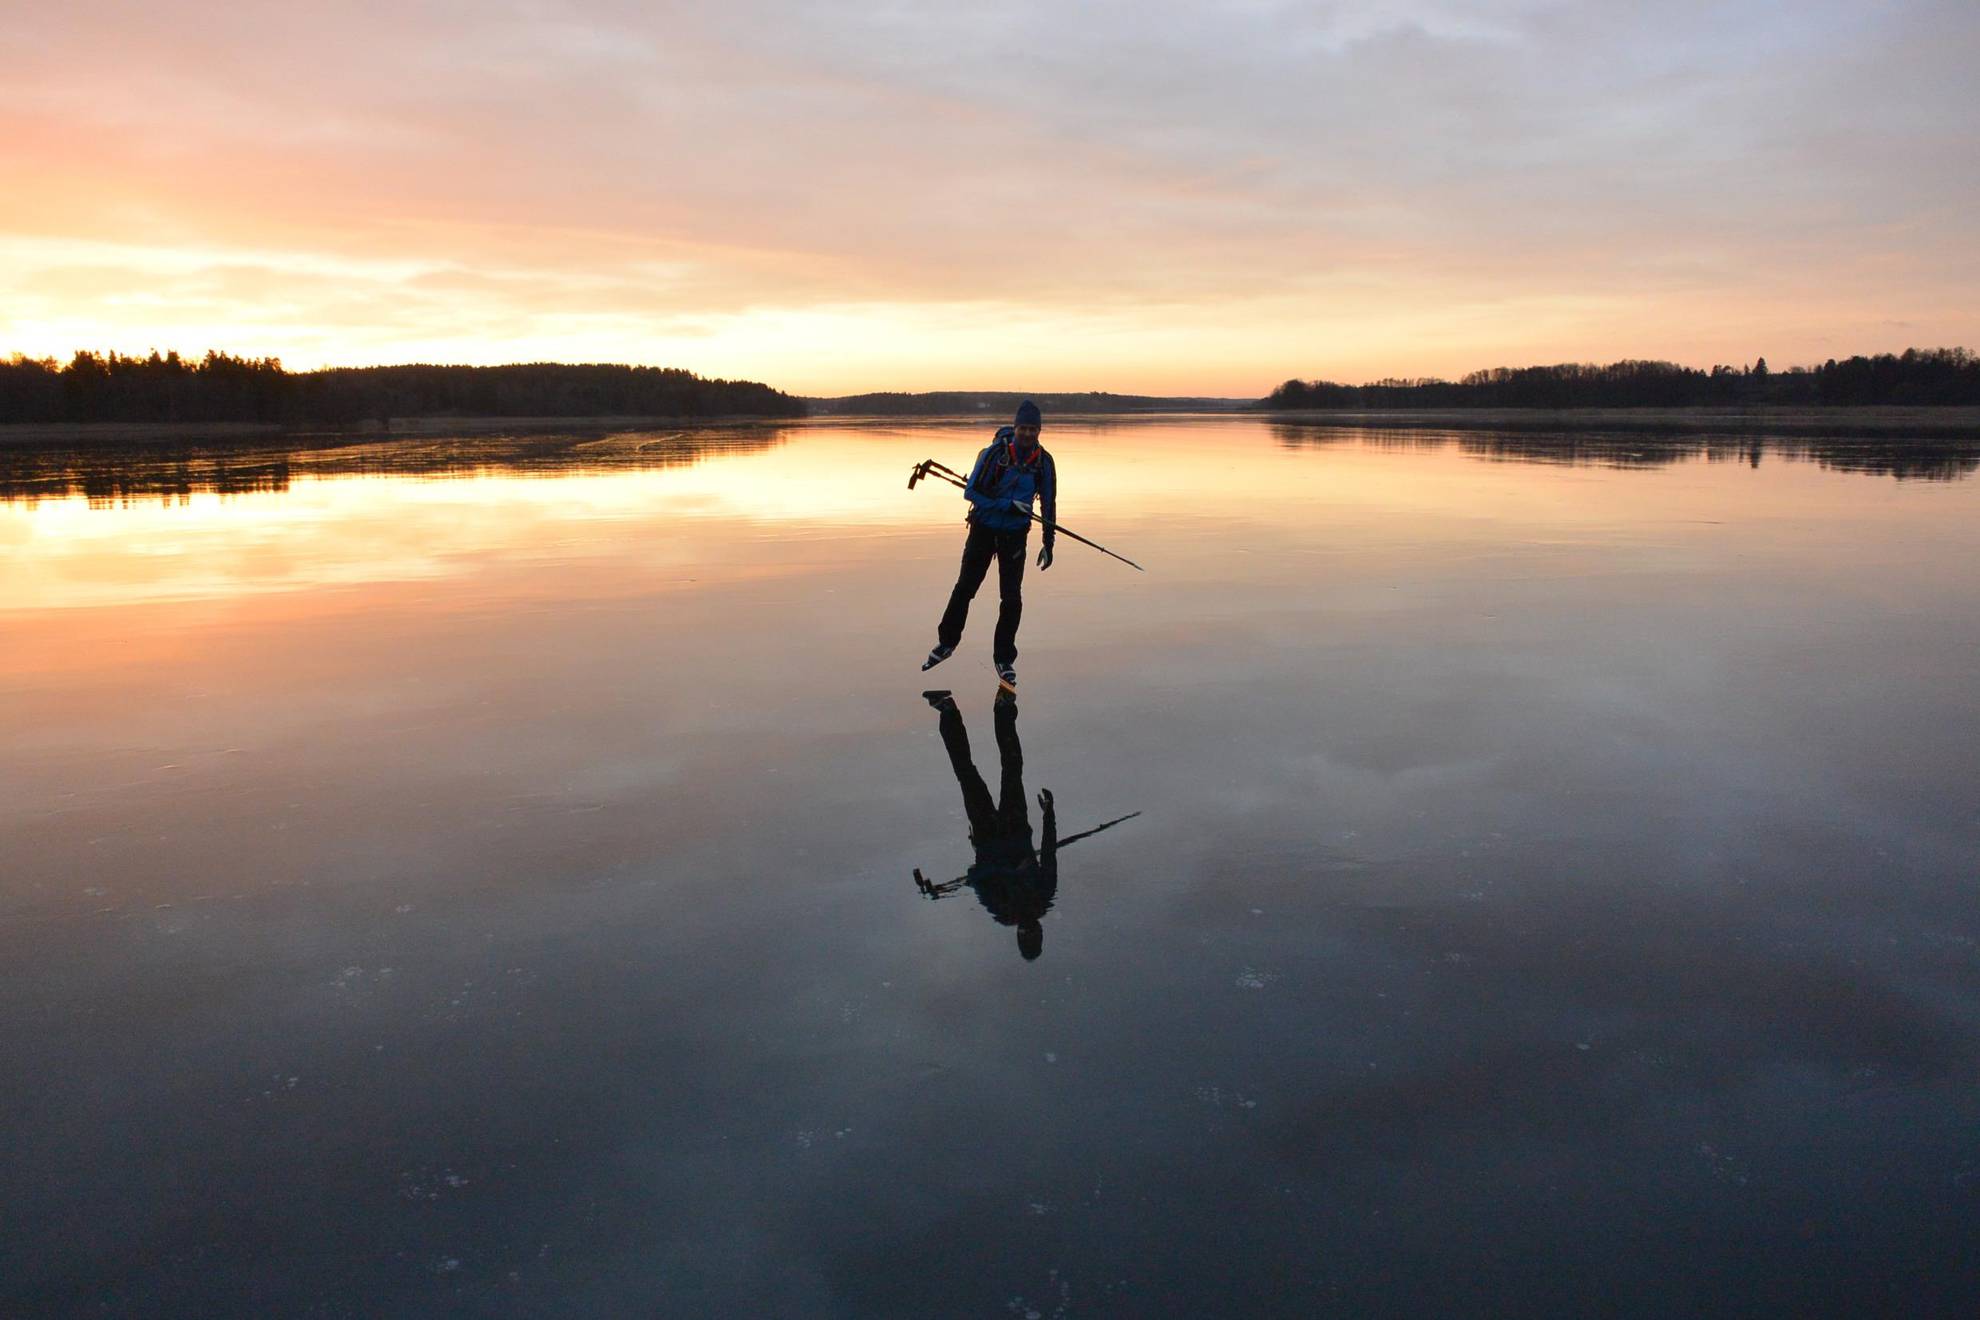 Sortie en patin à glace sur le lac Mälaren